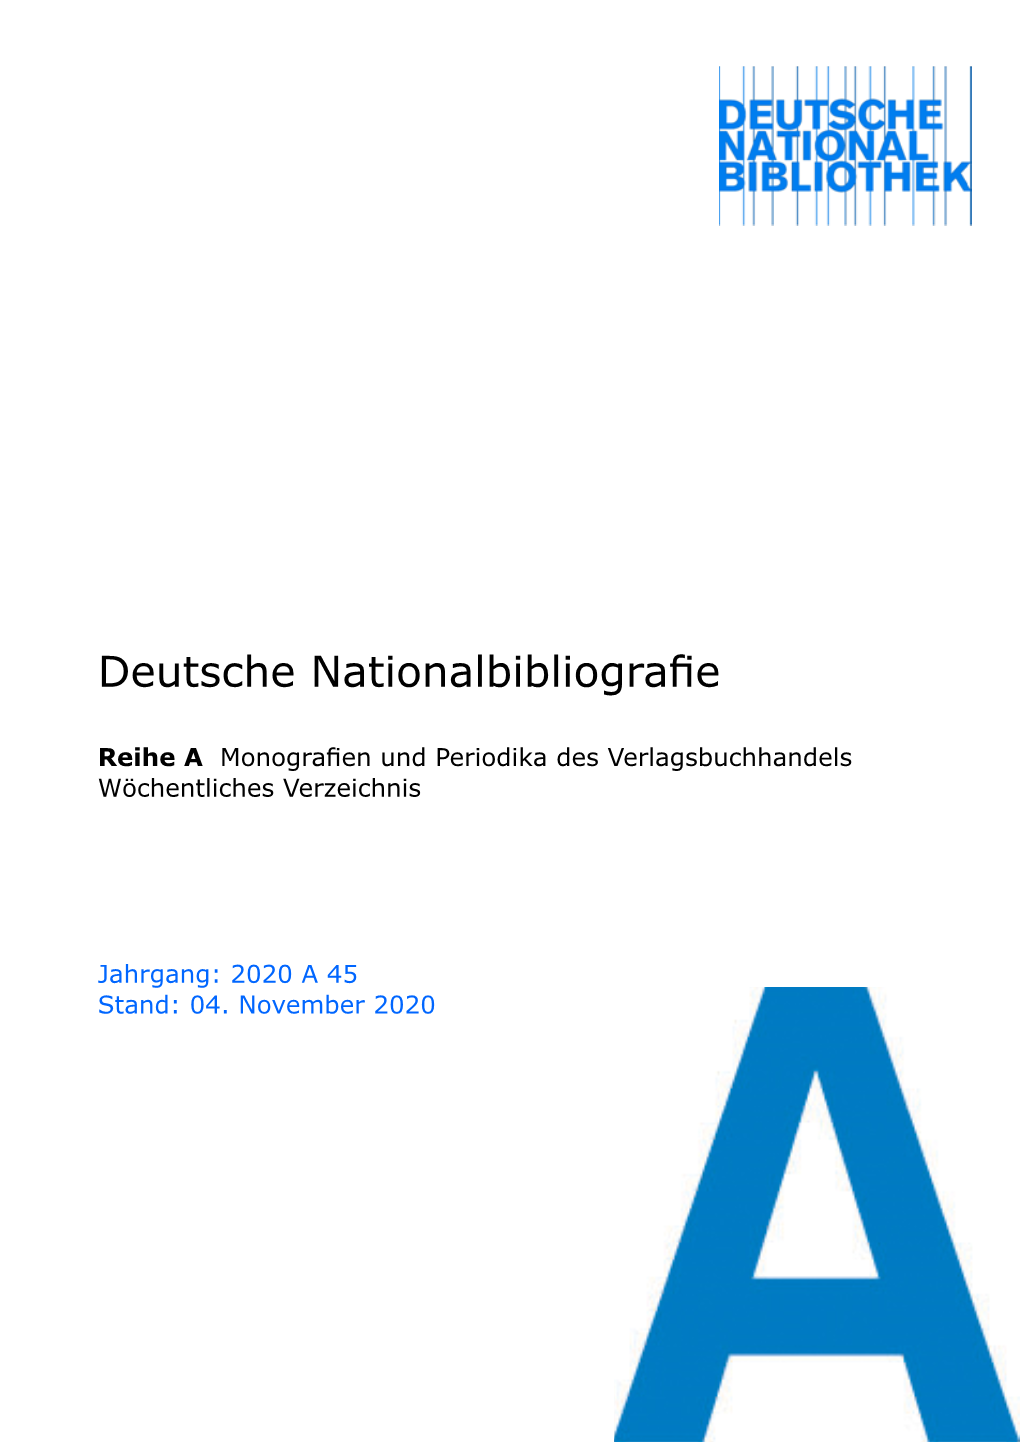 Deutsche Nationalbibliografie 2020 a 45